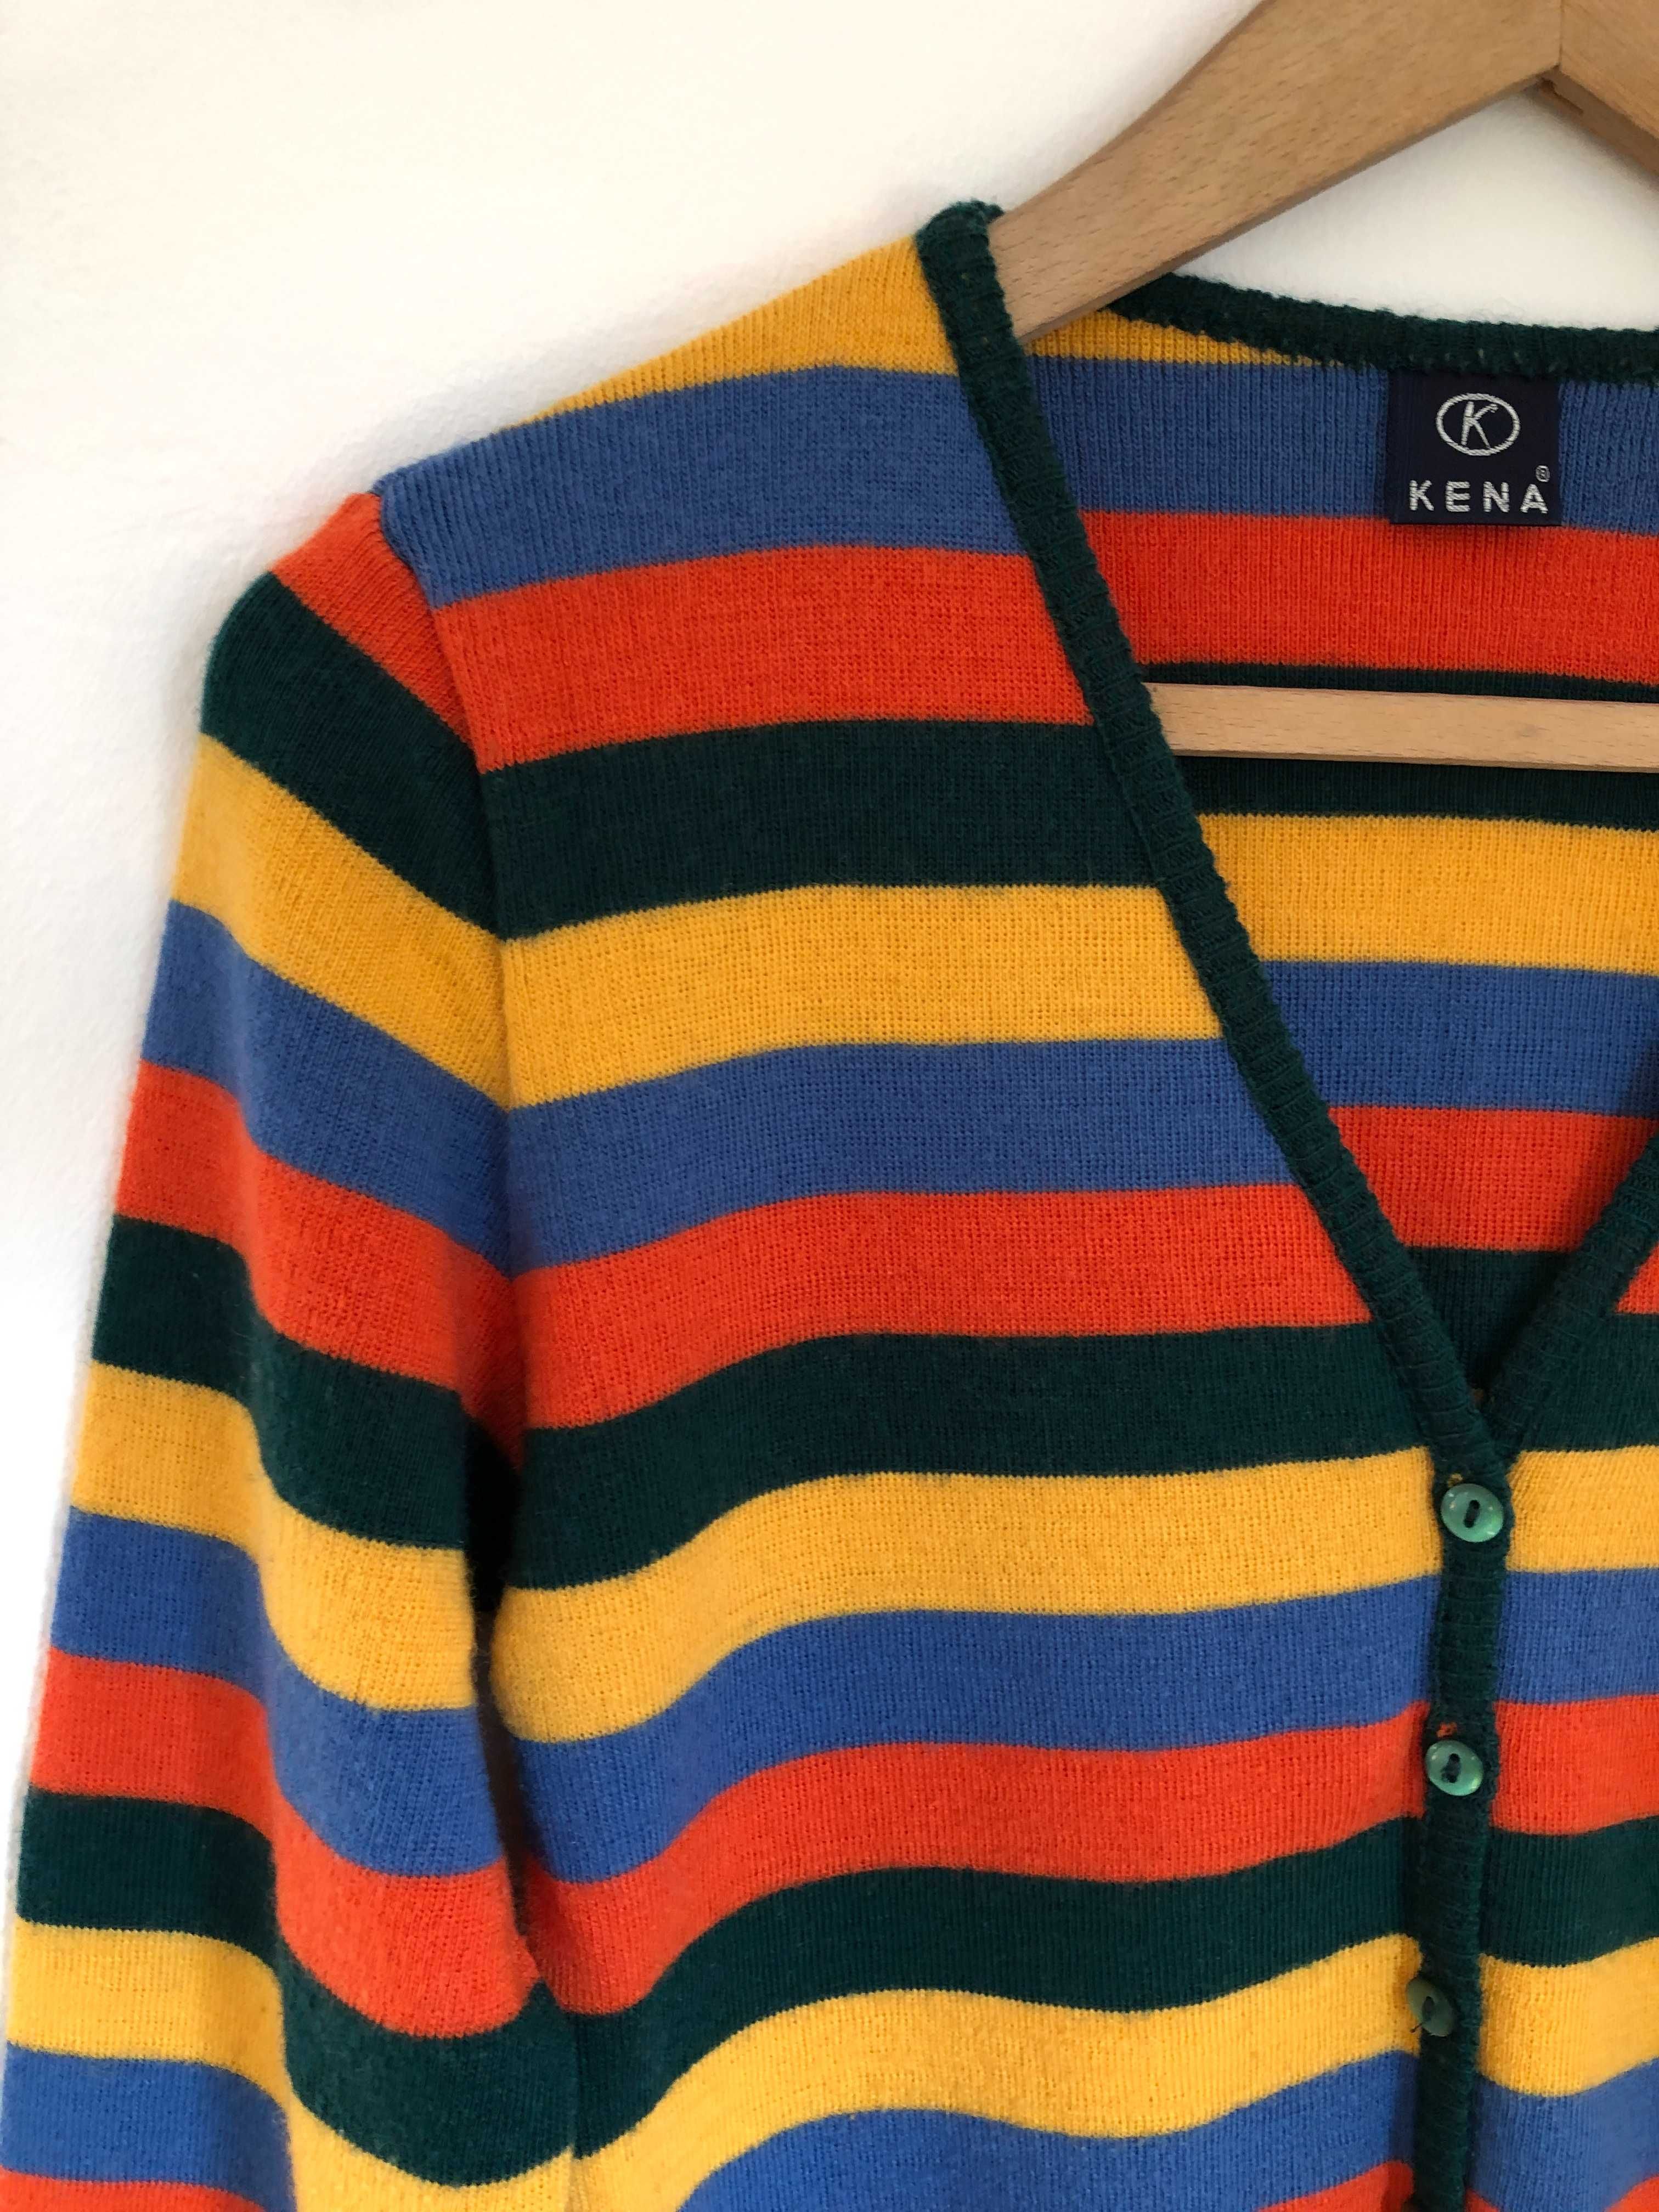 Sweter zapinany na guziki Kena S / M paski vintage wełna retro